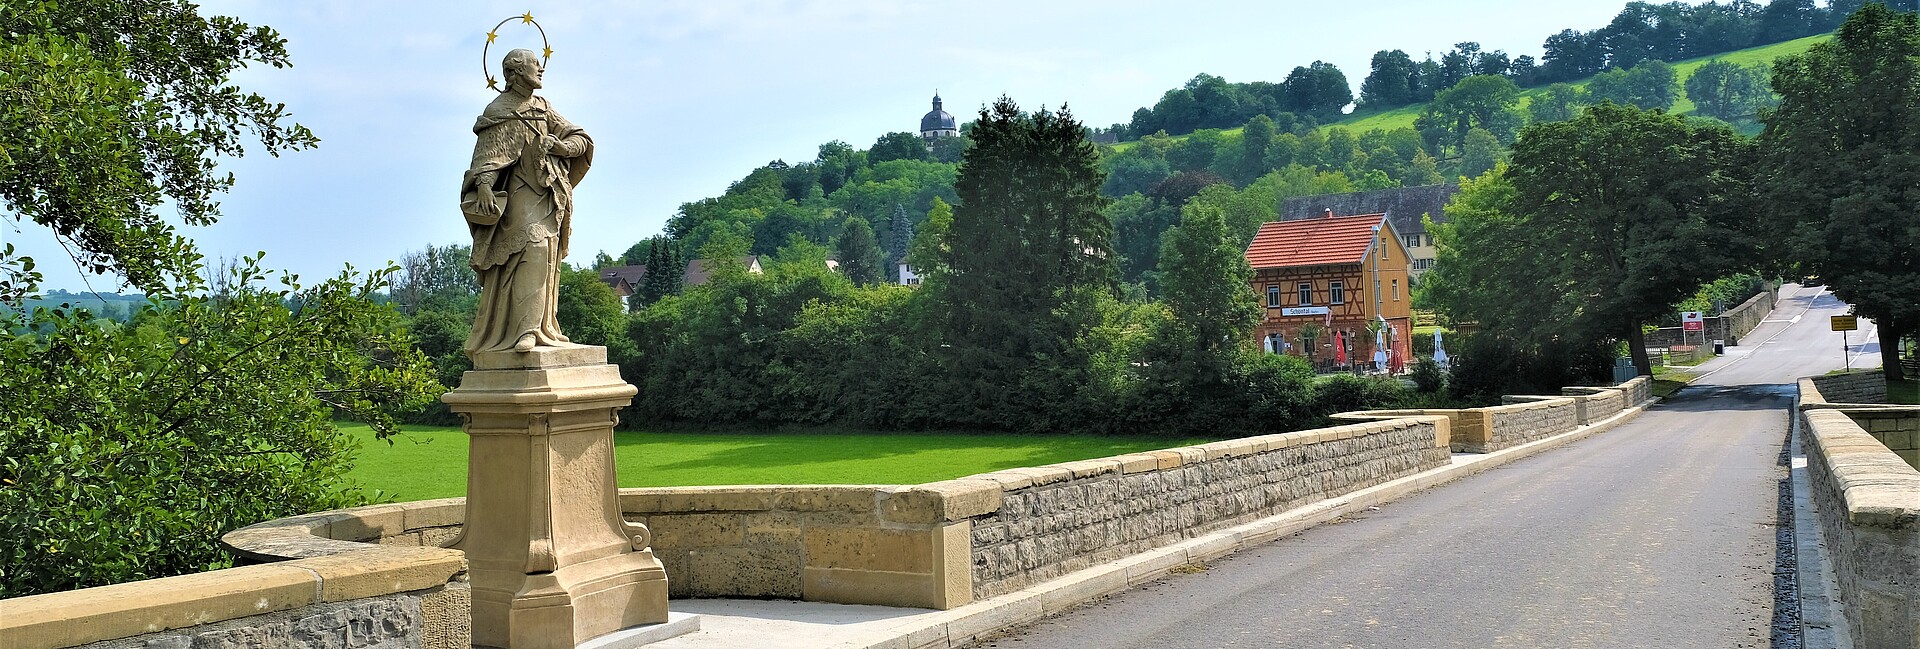 Bild zeigt historische Jagstbrücke mit der Statue des Heiligen Nepomuk